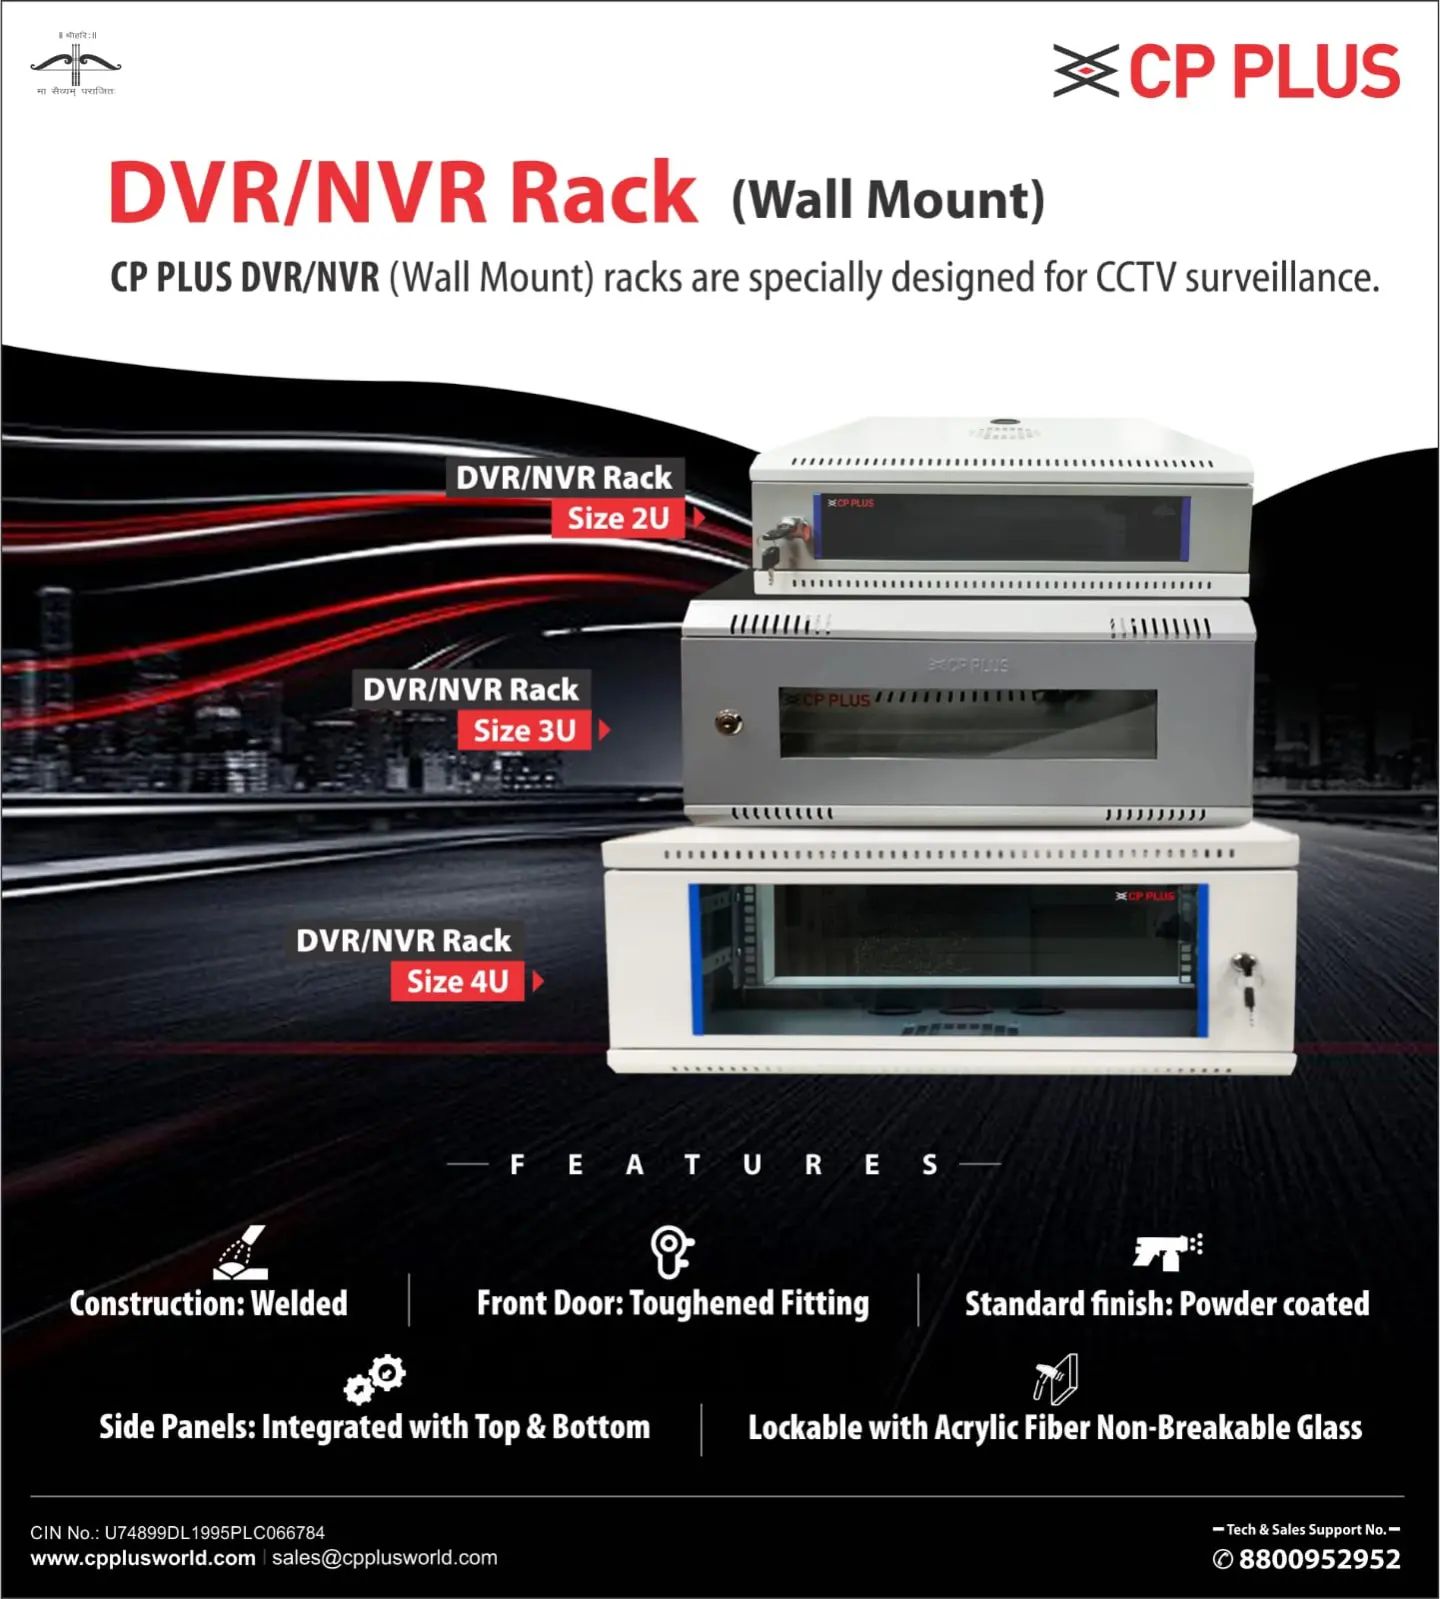 DVR-NVR Rack